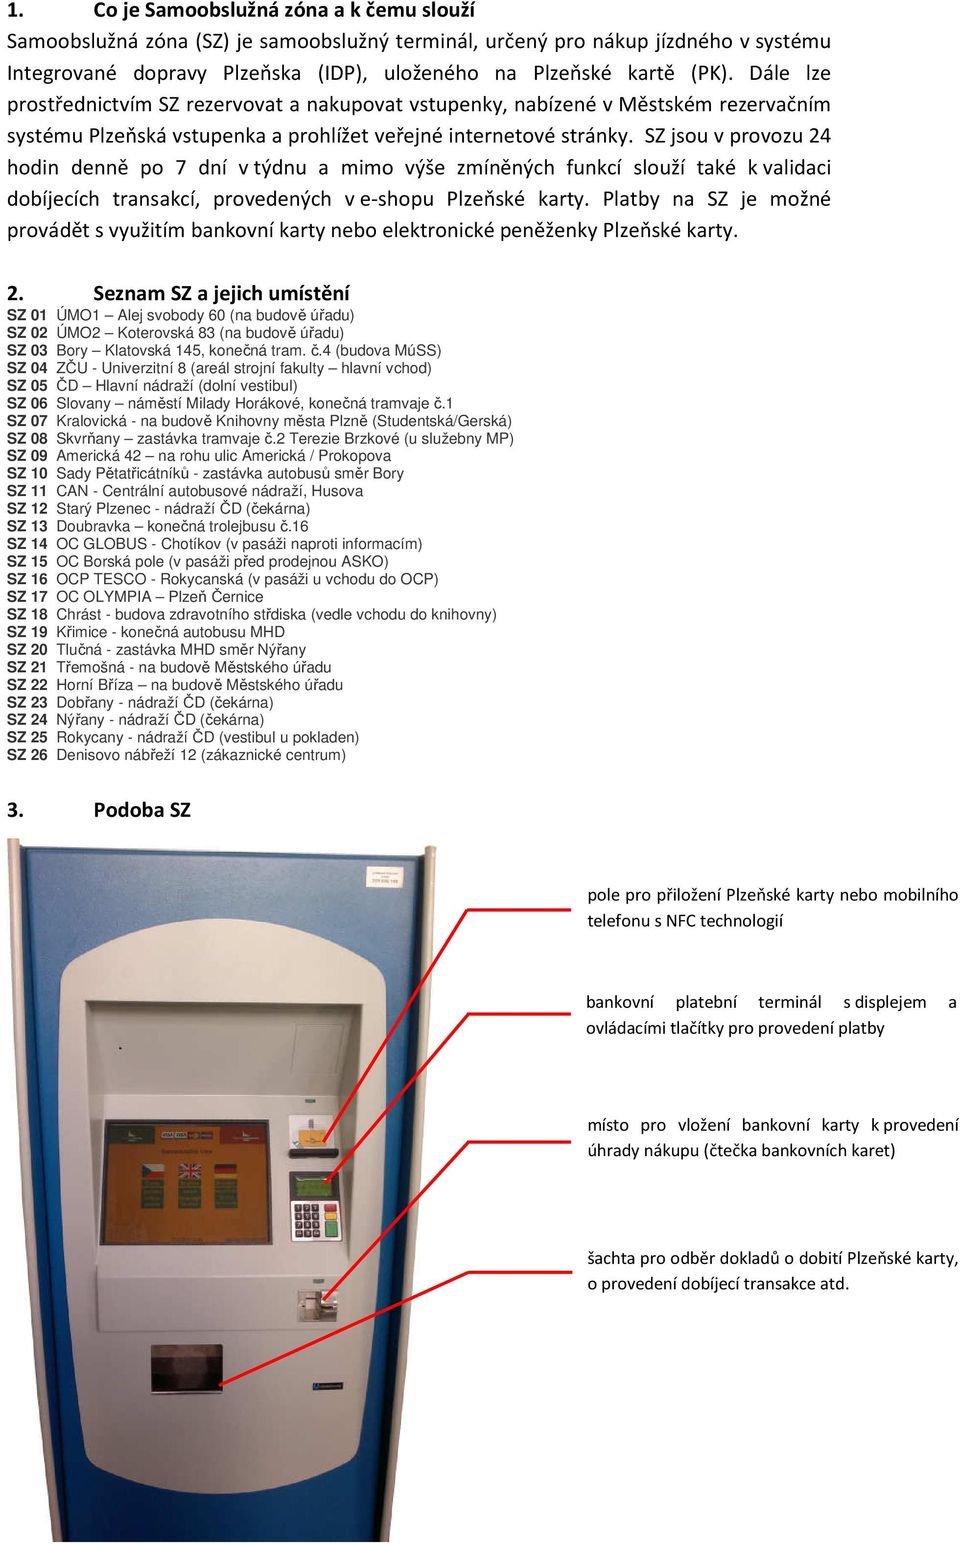 SZ jsou v provozu 24 hodin denně po 7 dní v týdnu a mimo výše zmíněných funkcí slouží také k validaci dobíjecích transakcí, provedených v e-shopu Plzeňské karty.